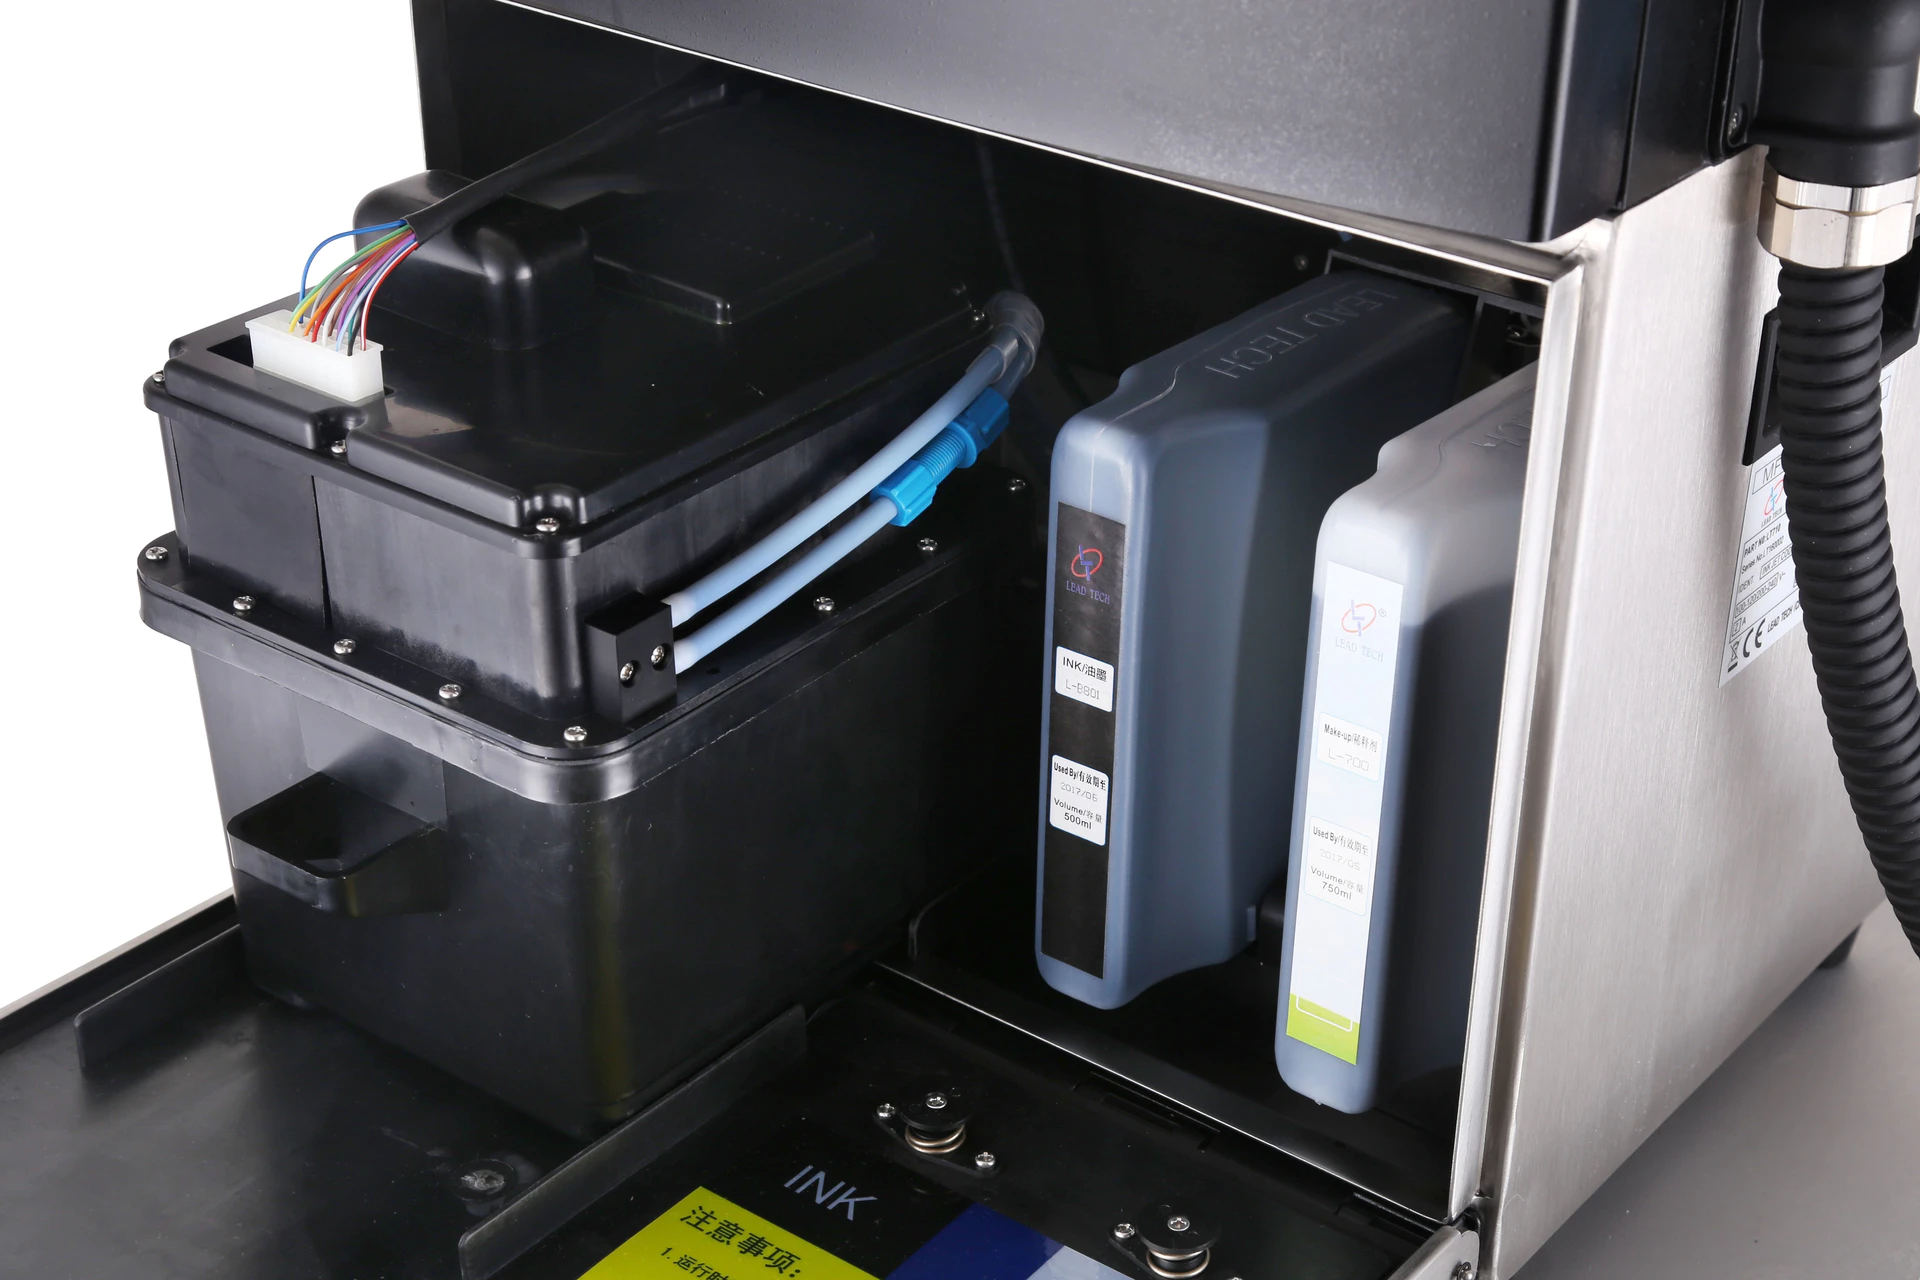 Lead Tech Lt710 Low Cost Cij Inkjet Printer